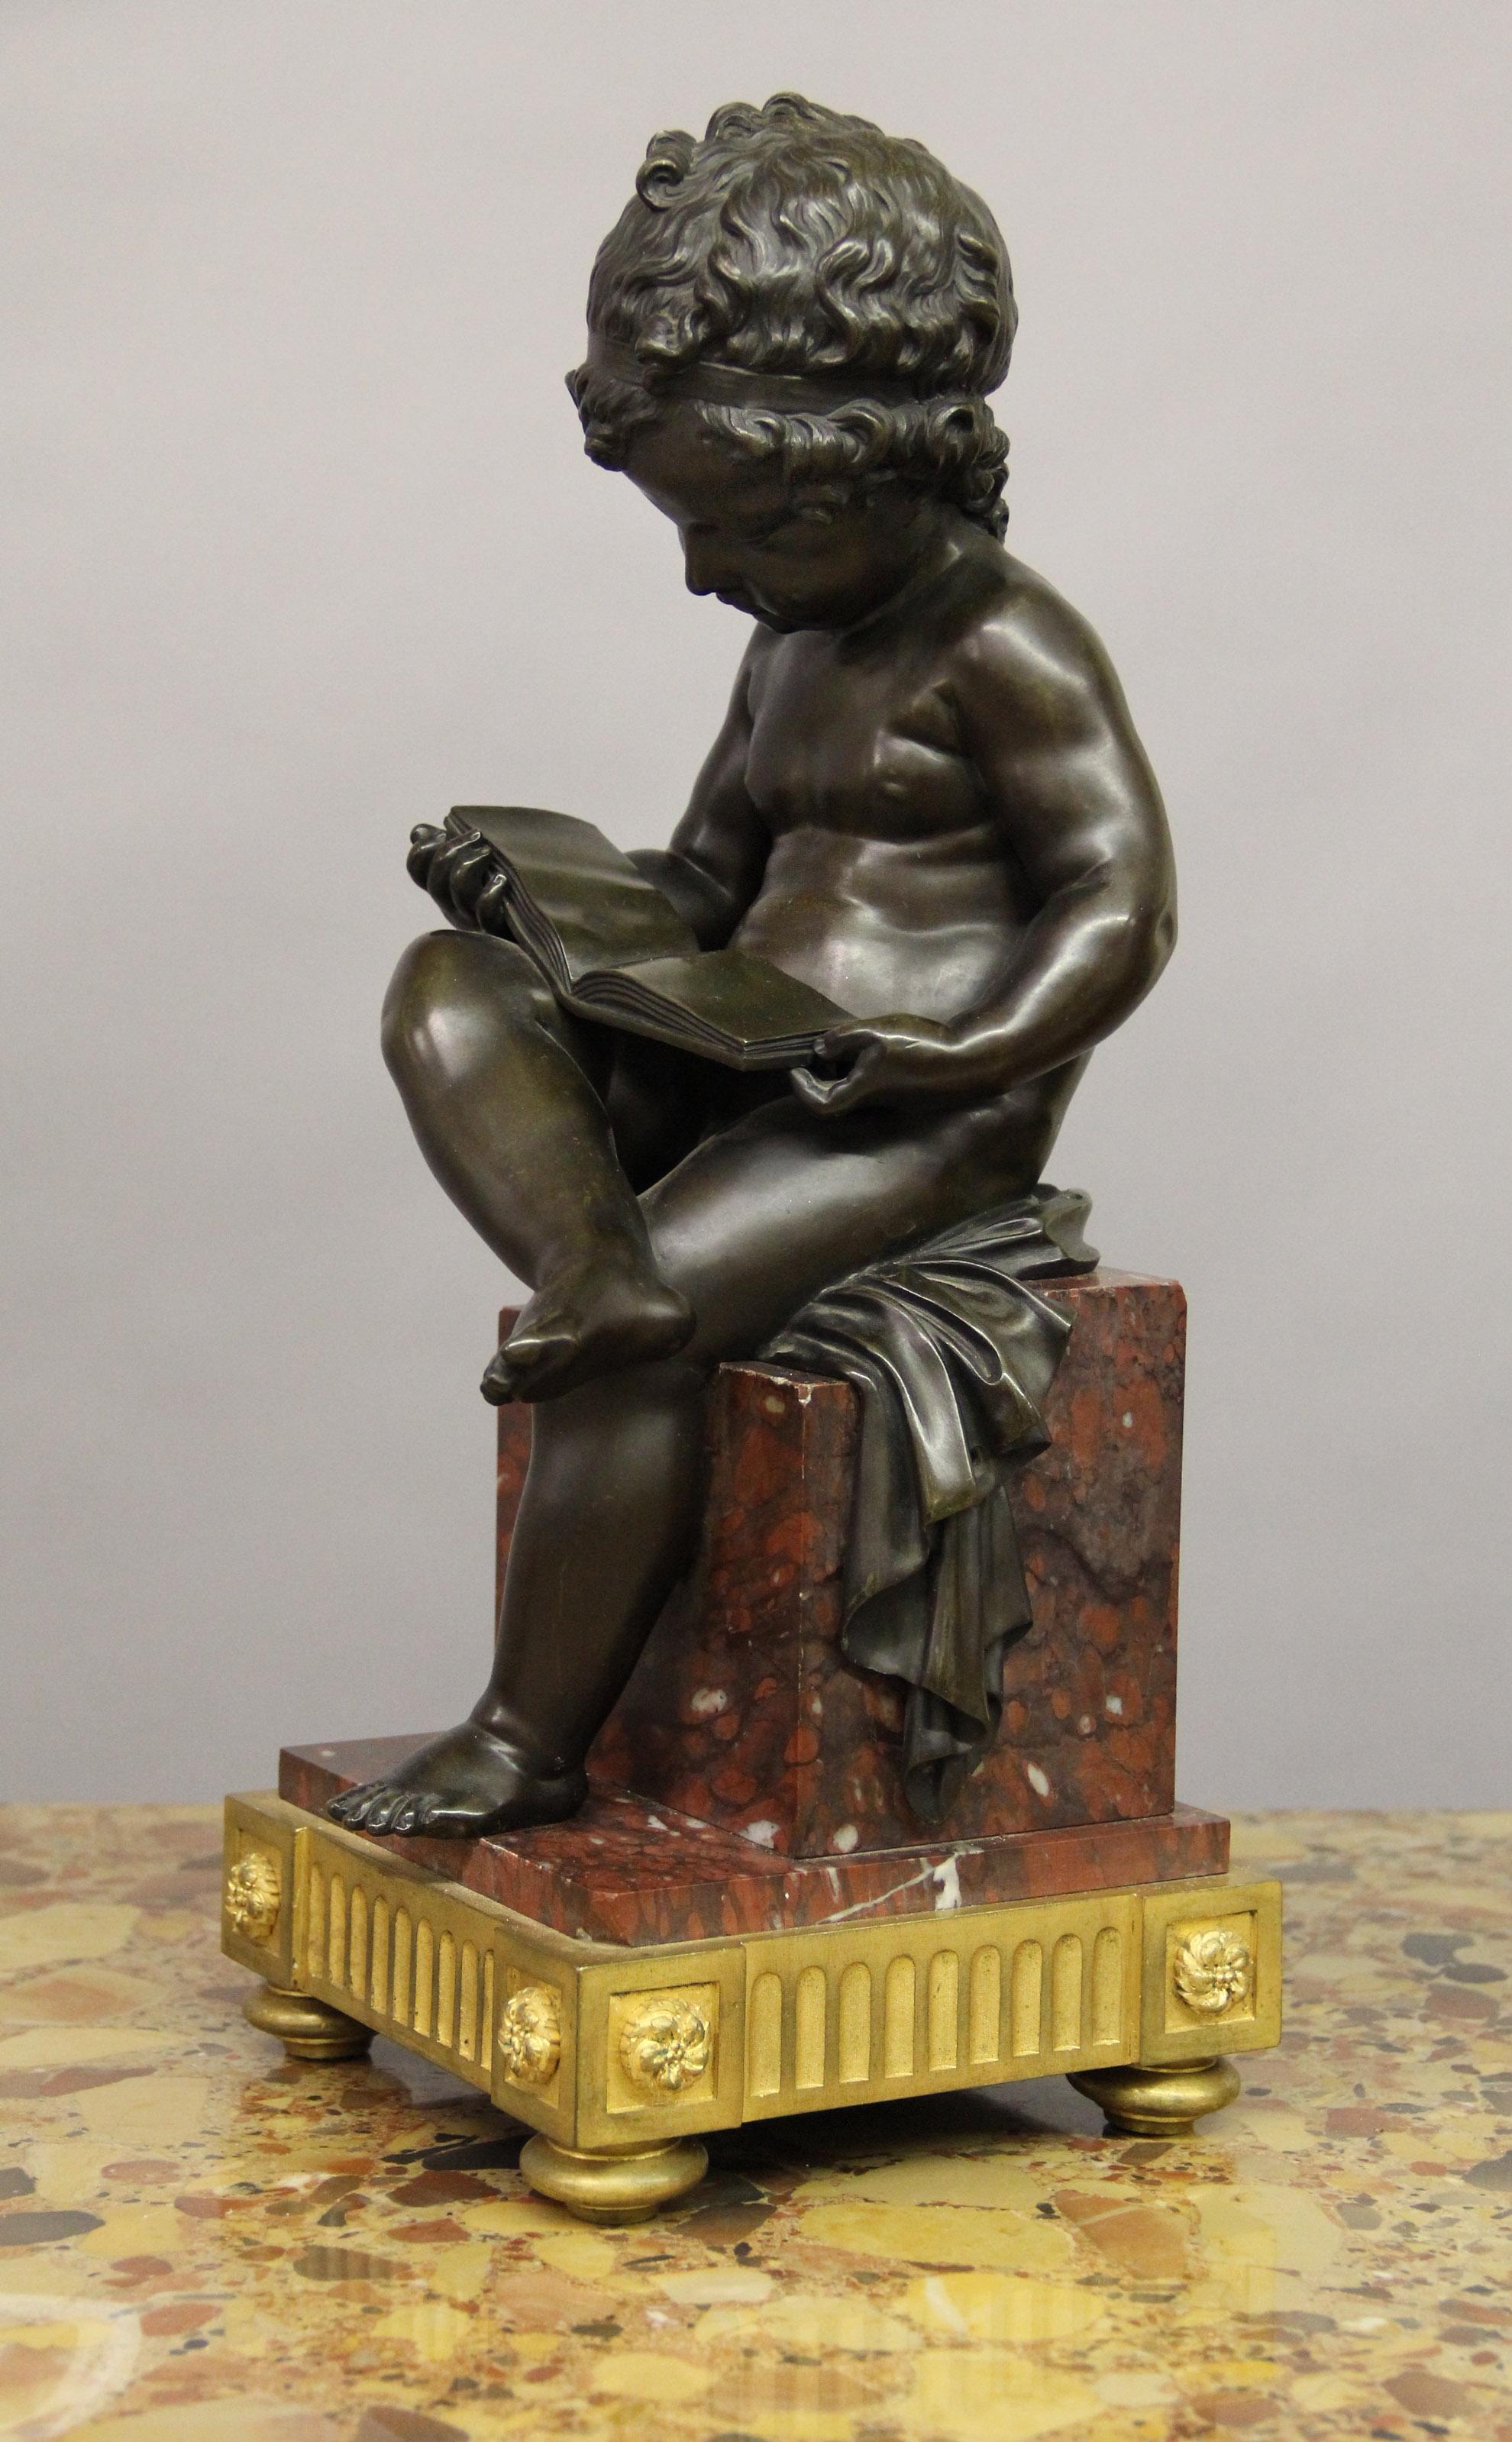 Ein niedliches Paar Bronzekinder aus dem 19. Jahrhundert mit Darstellungen aus Kunst und Literatur

Sie stellen jeweils ein Kind dar, das auf einer Stufe aus rotem Marmor und einem Sockel aus vergoldeter Bronze sitzt. Ein Kind liest und das andere